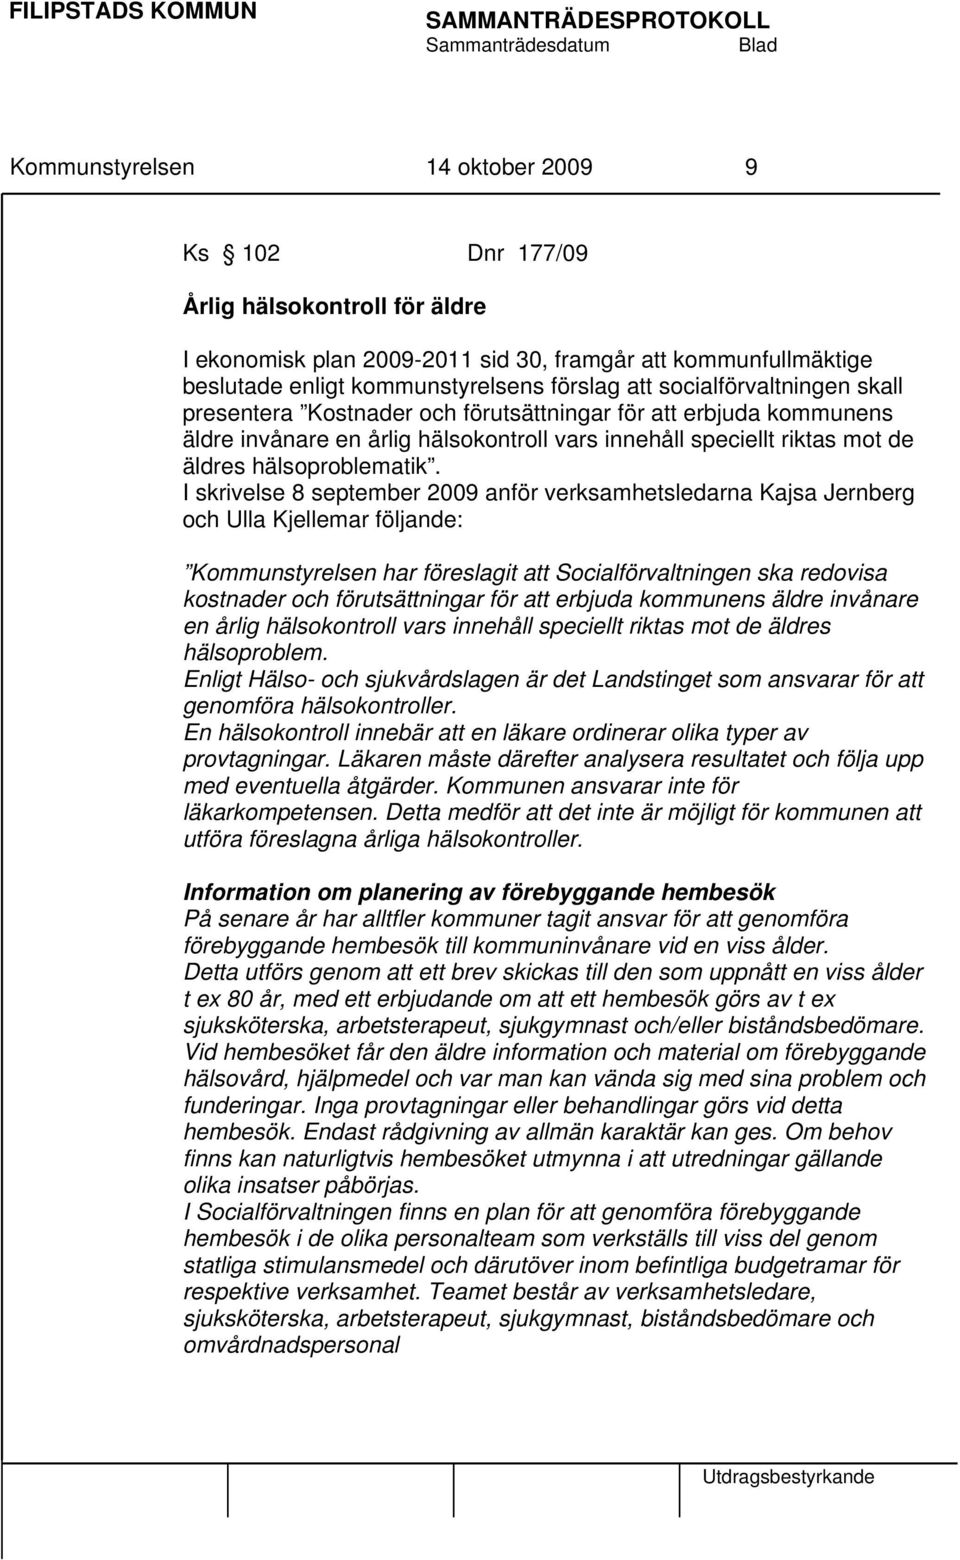 I skrivelse 8 september 2009 anför verksamhetsledarna Kajsa Jernberg och Ulla Kjellemar följande: Kommunstyrelsen har föreslagit att Socialförvaltningen ska redovisa kostnader och förutsättningar för